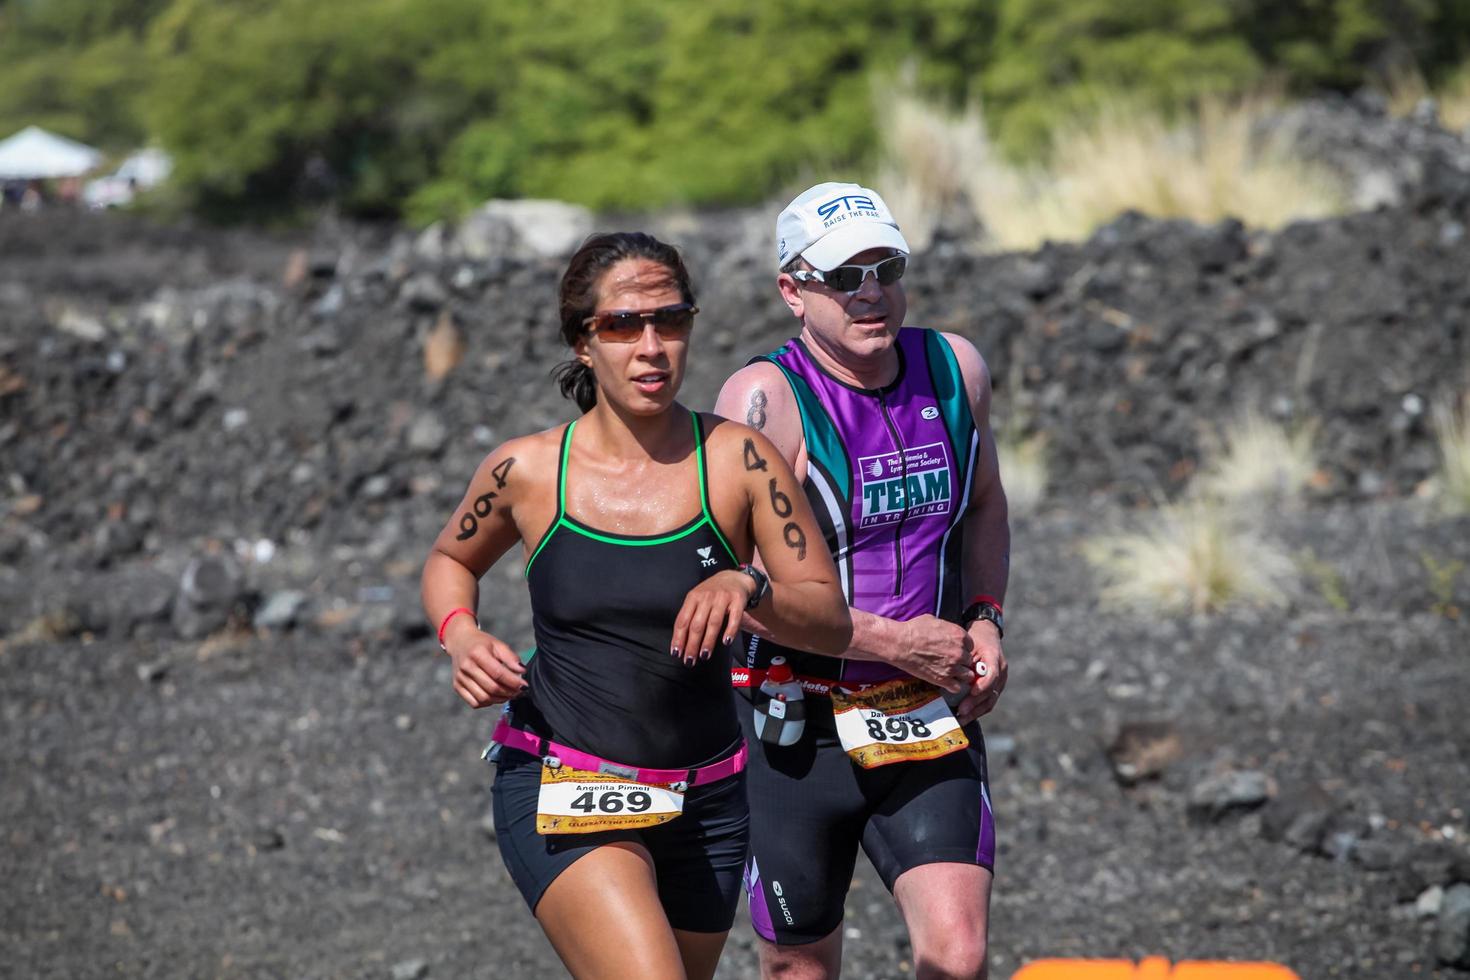 waikoloa, estados unidos, 3 de abril de 2011 - corredores no identificados en el triatlón lavaman en waikoloa, hawaii. se lleva a cabo en formato olímpico: 1,5 km de natación, 40 km de ciclismo y 10 km de carrera. foto